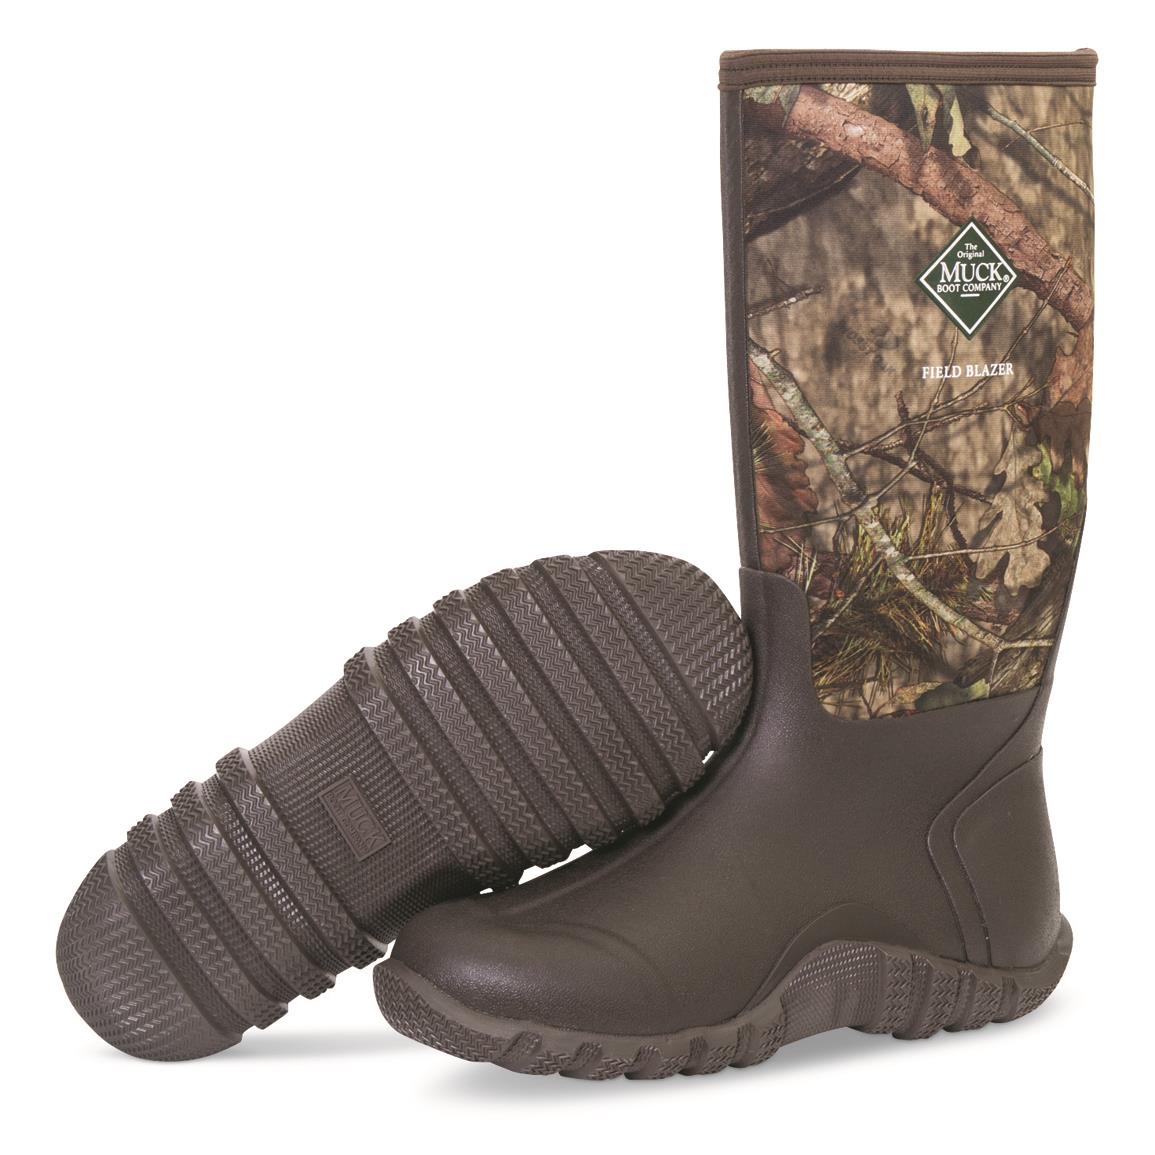 men's fieldblazer muck boots